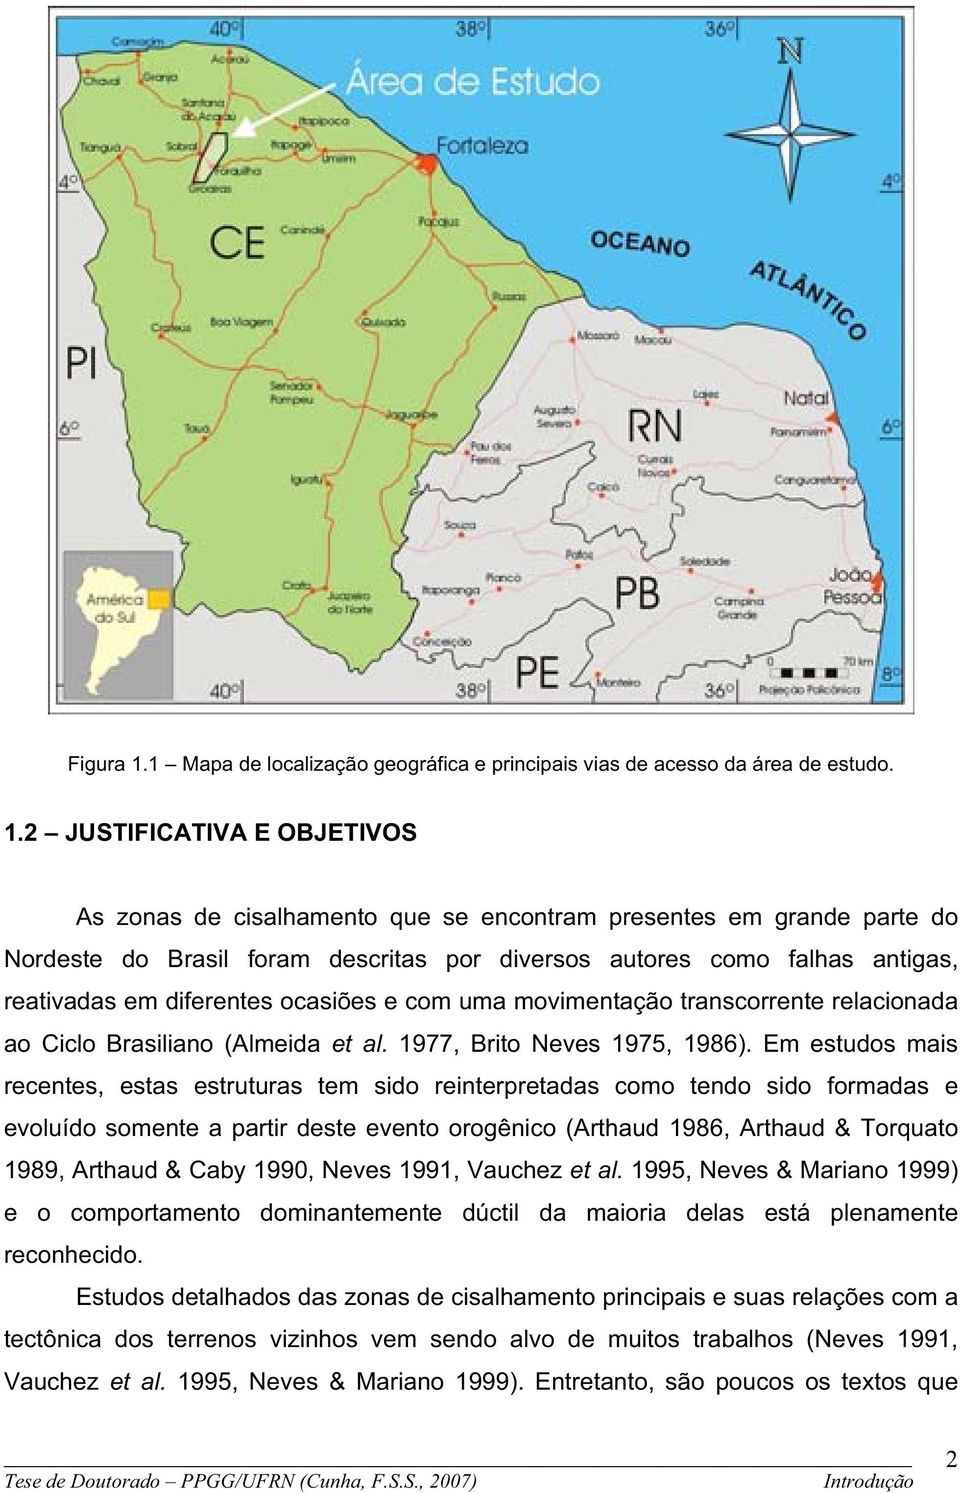 2 JUSTIFICATIVA E OBJETIVOS As zonas de cisalhamento que se encontram presentes em grande parte do Nordeste do Brasil foram descritas por diversos autores como falhas antigas, reativadas em